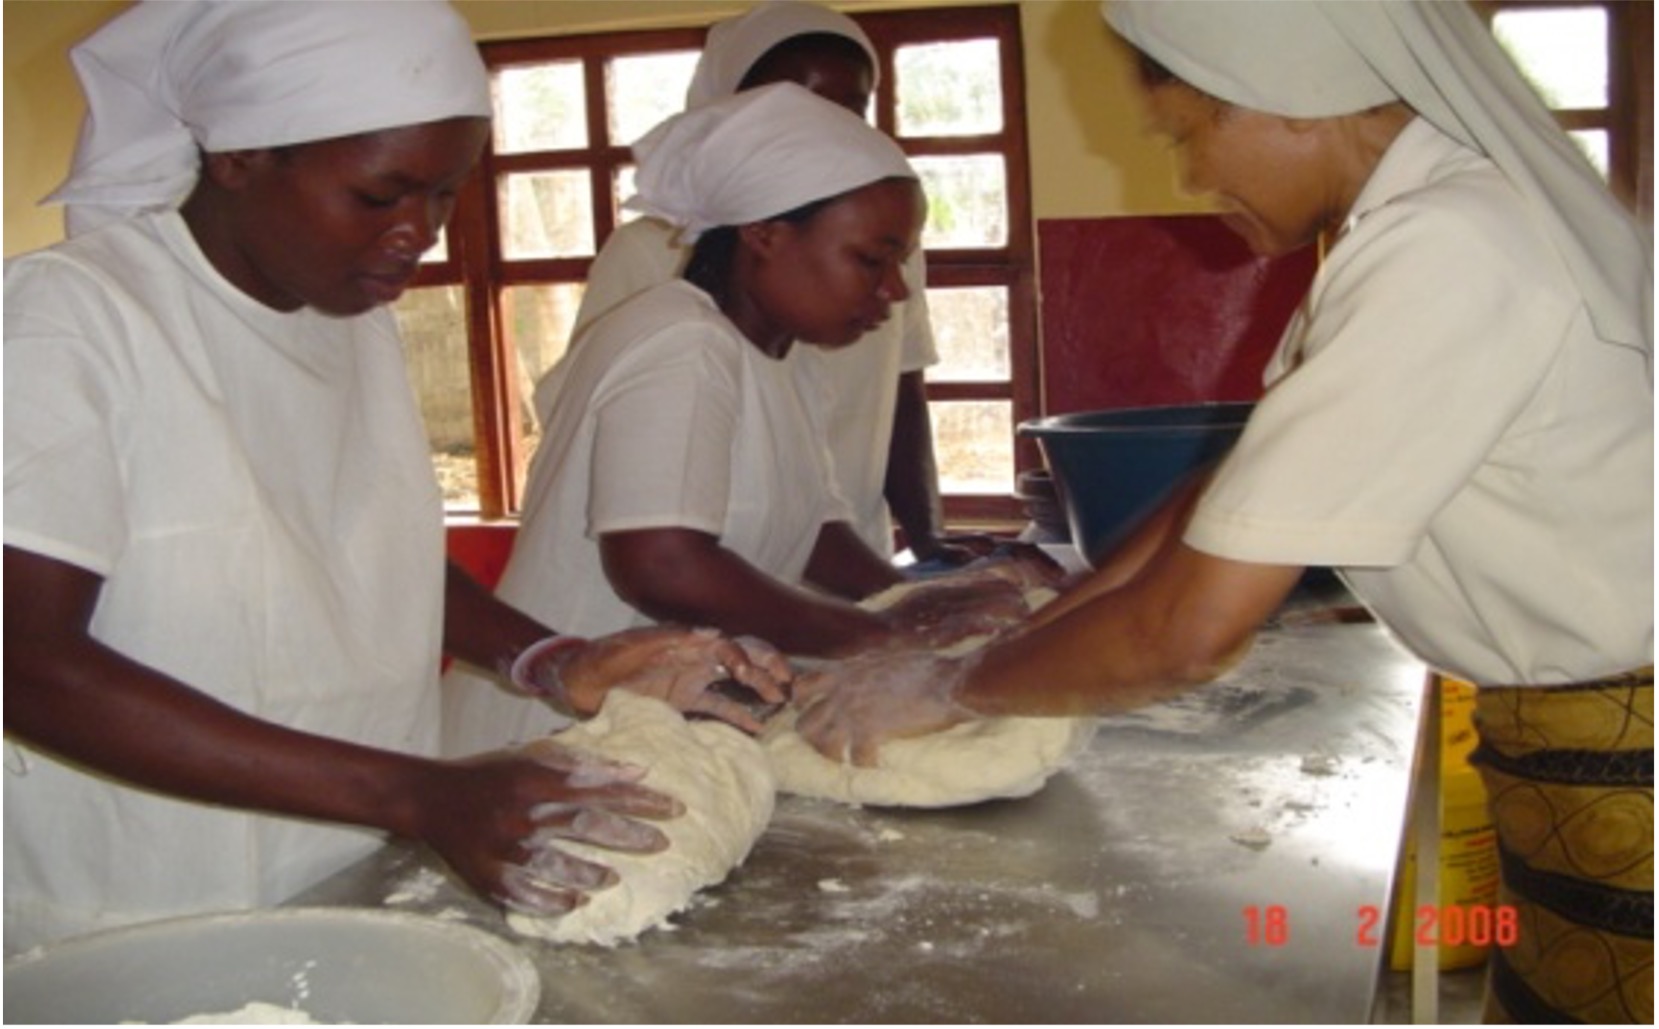 Adquisición de amasadora de pan para tecnificar la panaderia que contribuye al sostenimiento de las familias de las viudas de Chalocuane